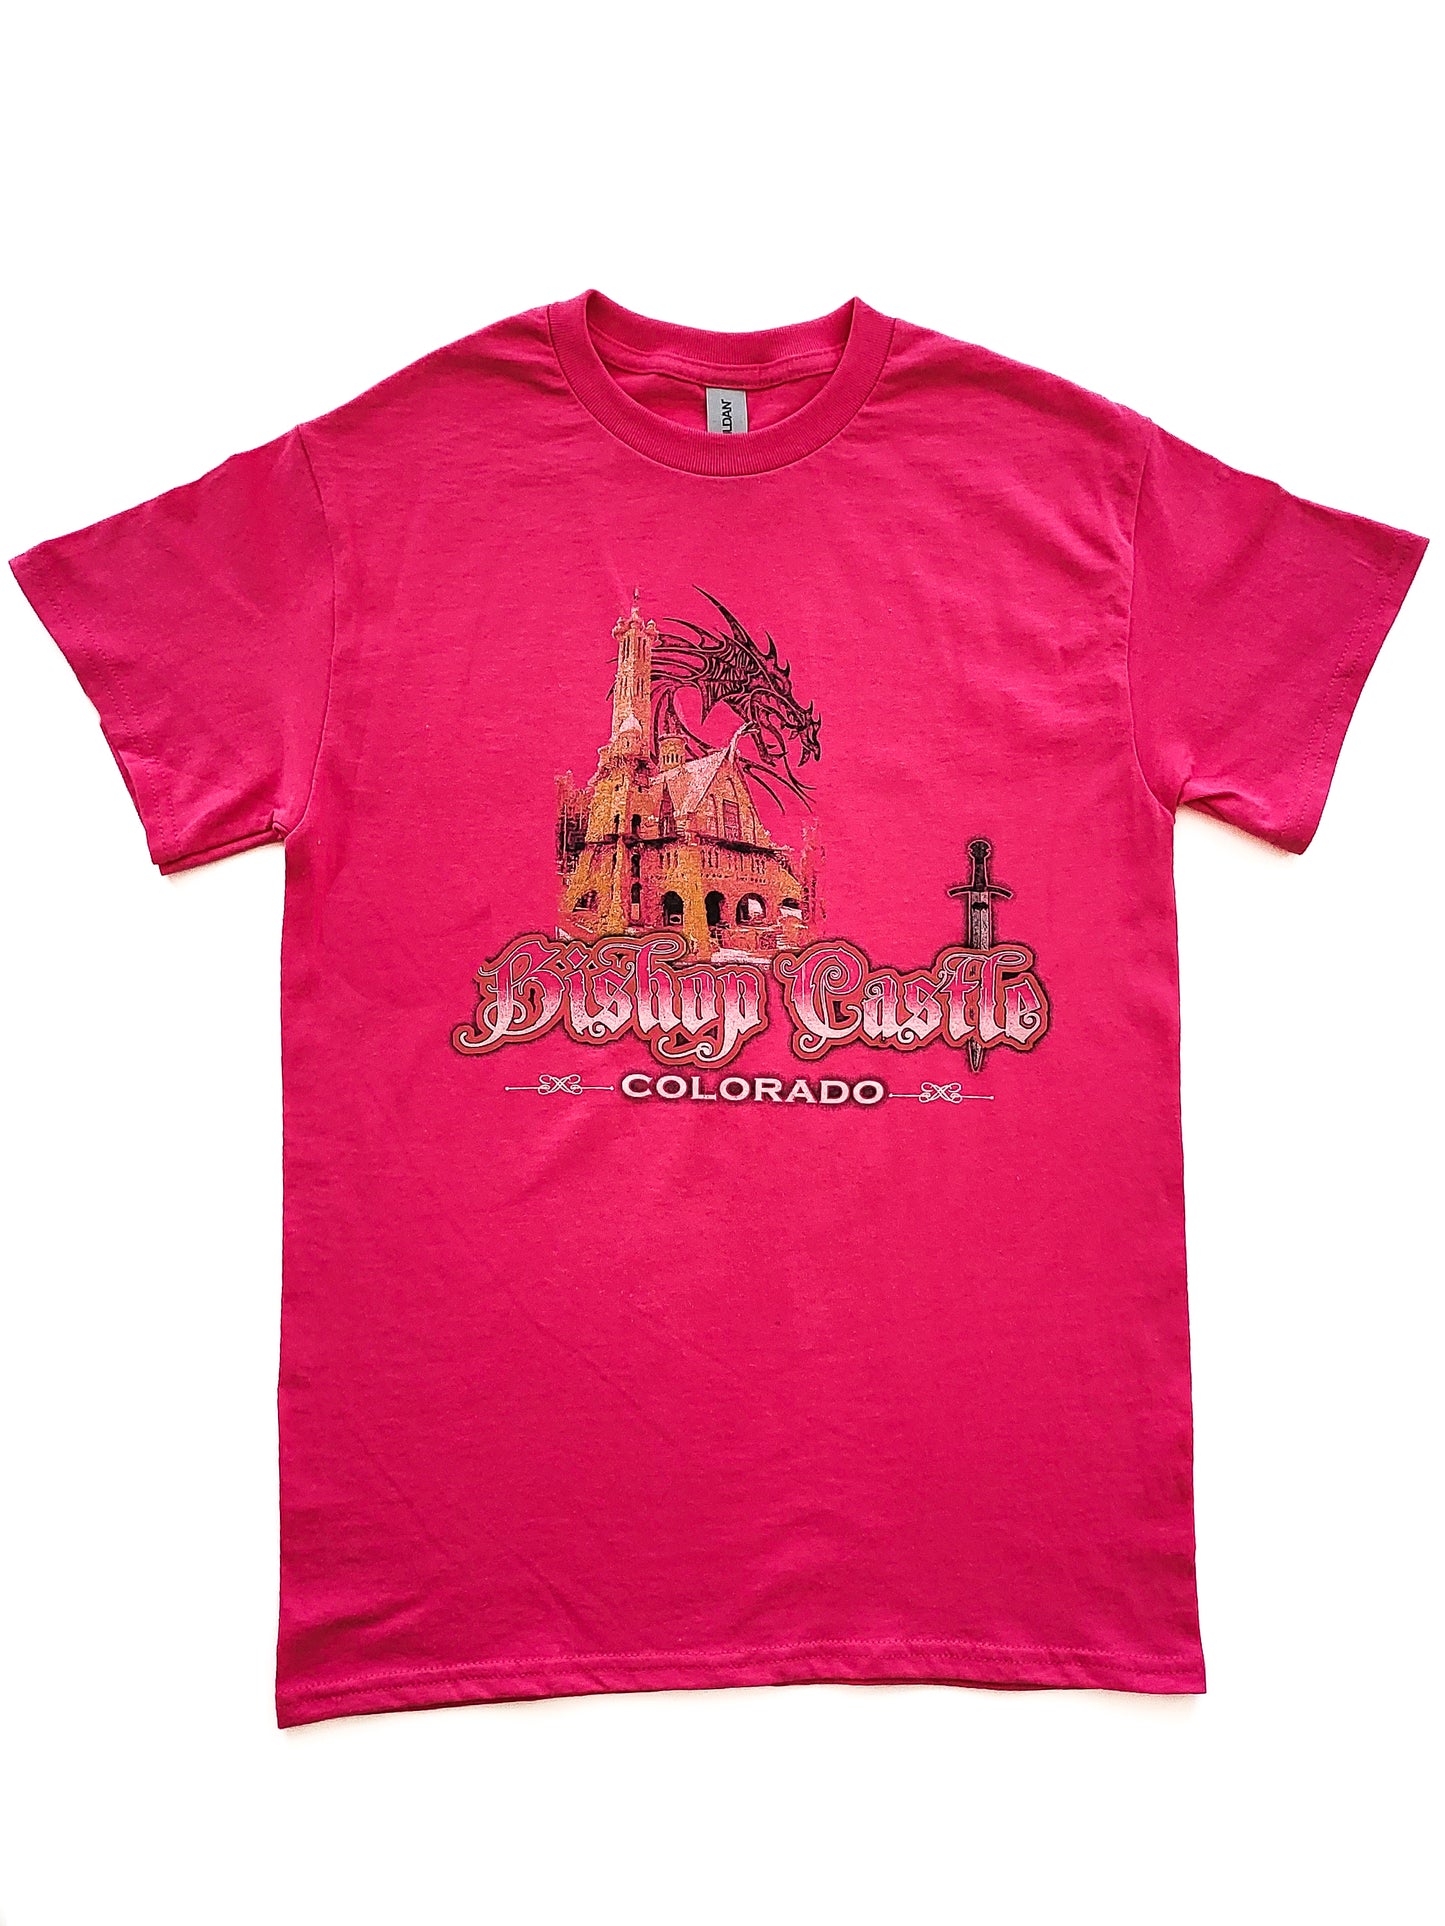 Bishop Castle Short Sleeve T-Shirt - Adult